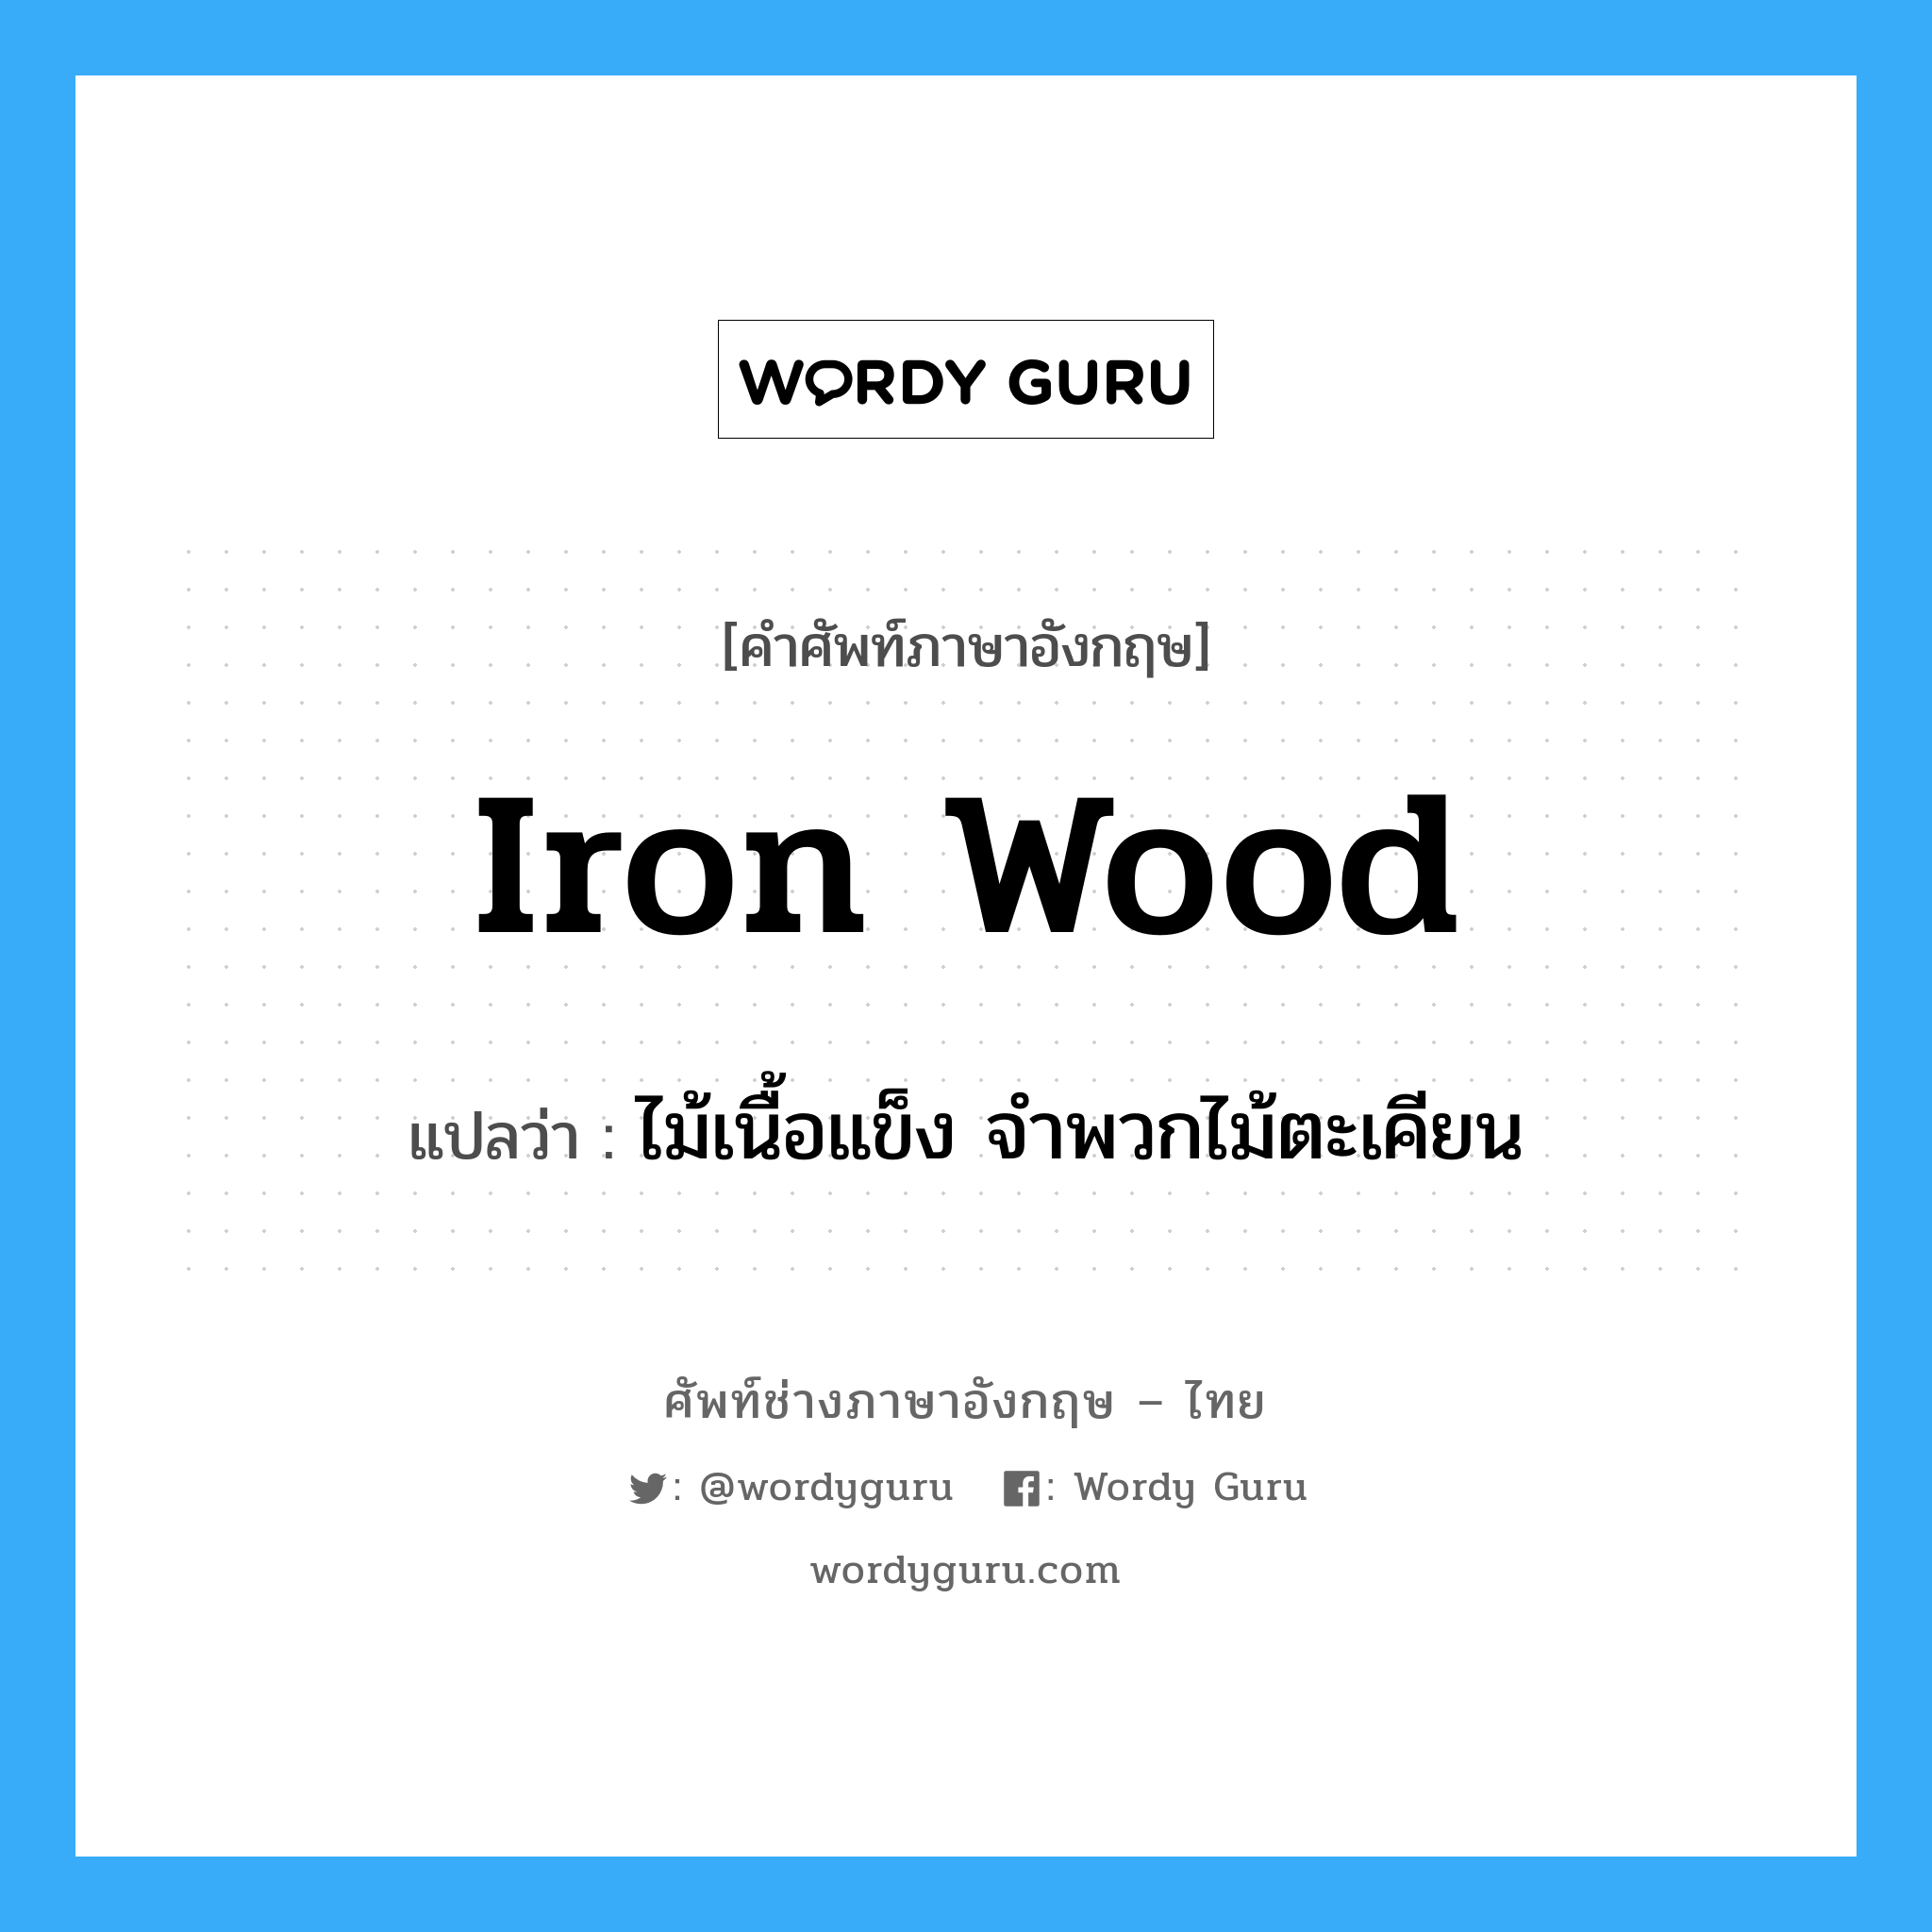 iron wood แปลว่า?, คำศัพท์ช่างภาษาอังกฤษ - ไทย iron wood คำศัพท์ภาษาอังกฤษ iron wood แปลว่า ไม้เนื้อแข็ง จำพวกไม้ตะเคียน